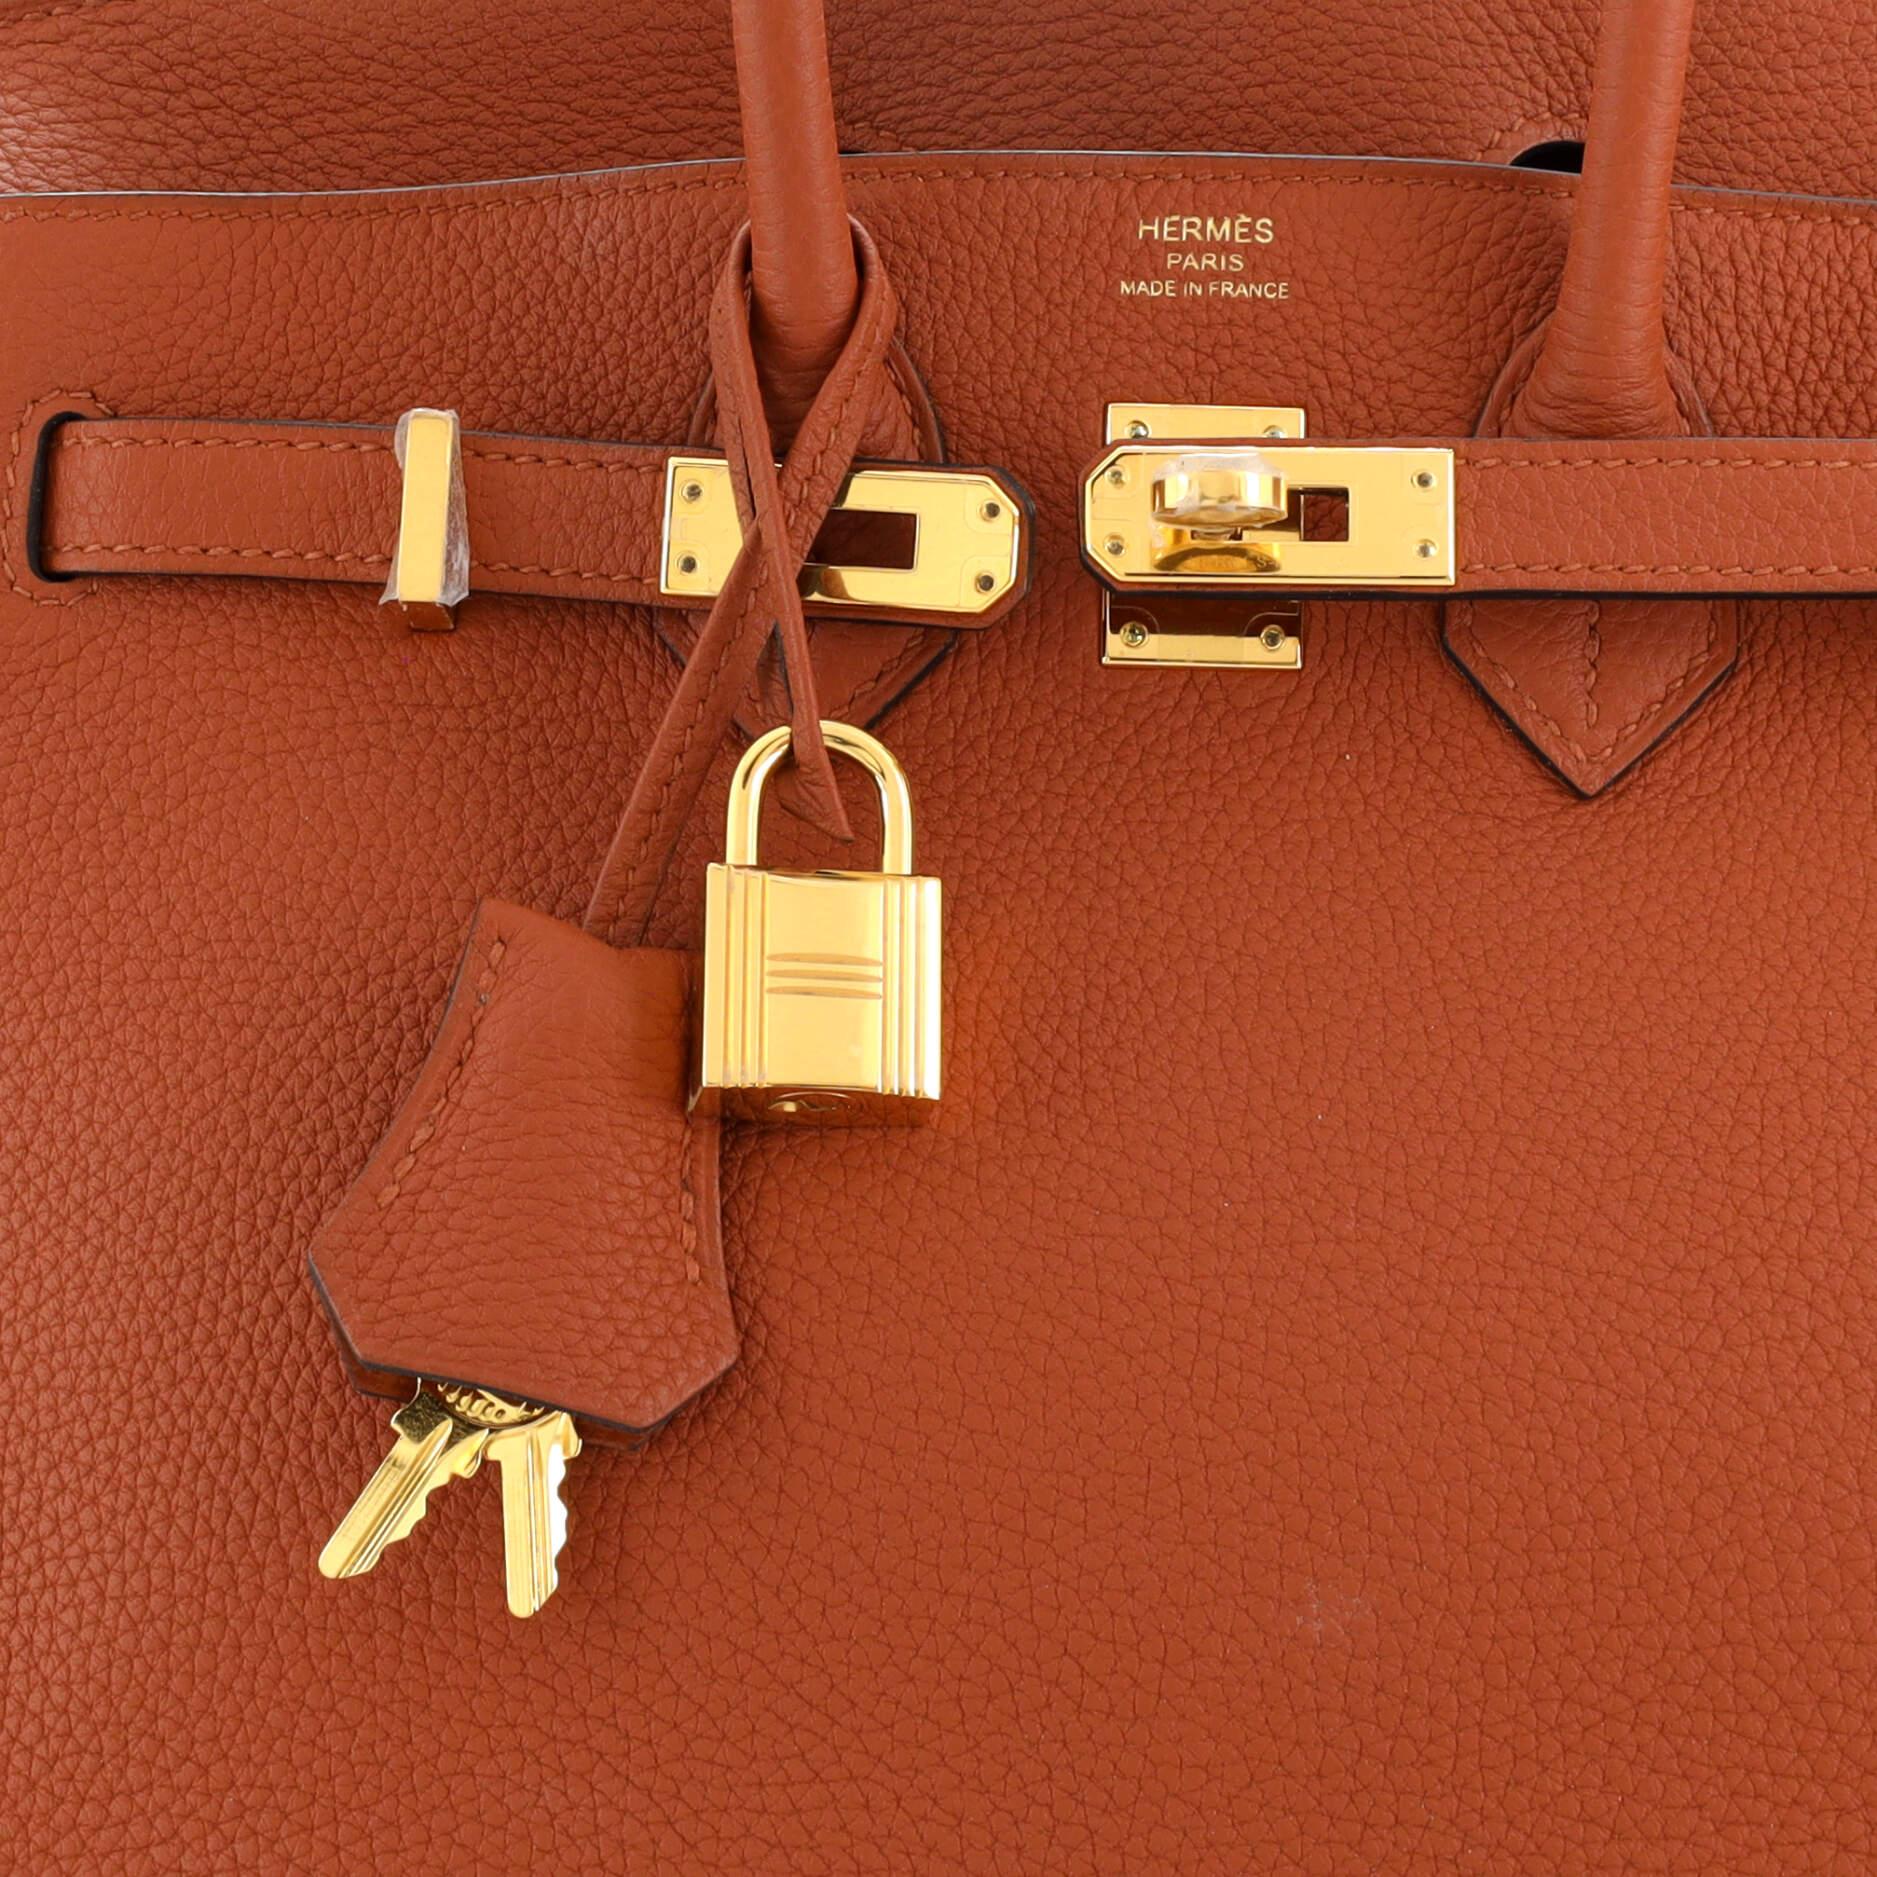 Hermes Birkin Handbag Cuivre Togo with Gold Hardware 25 1